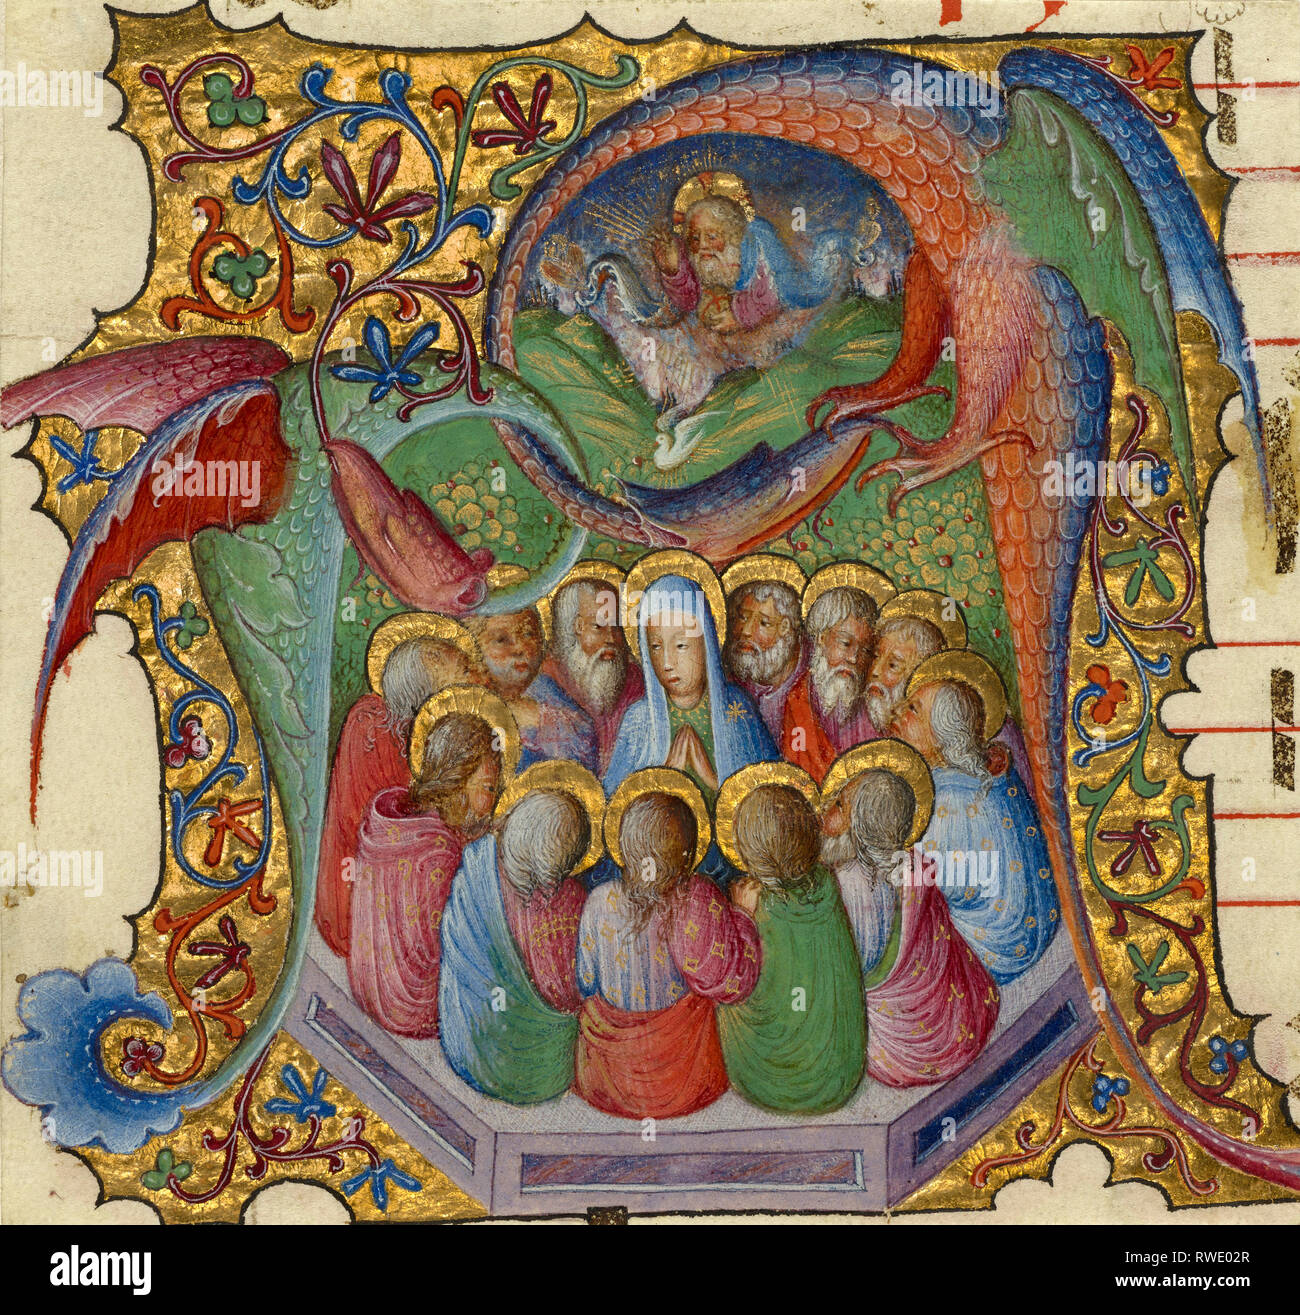 La Pentecôte ; attribué à Stefano da Verona (Italien (Lombard), 1374 - après 1438), Lombardie, Italie ; environ 1430 - 1435 ; Tempera et or sur parchemin ; Banque D'Images